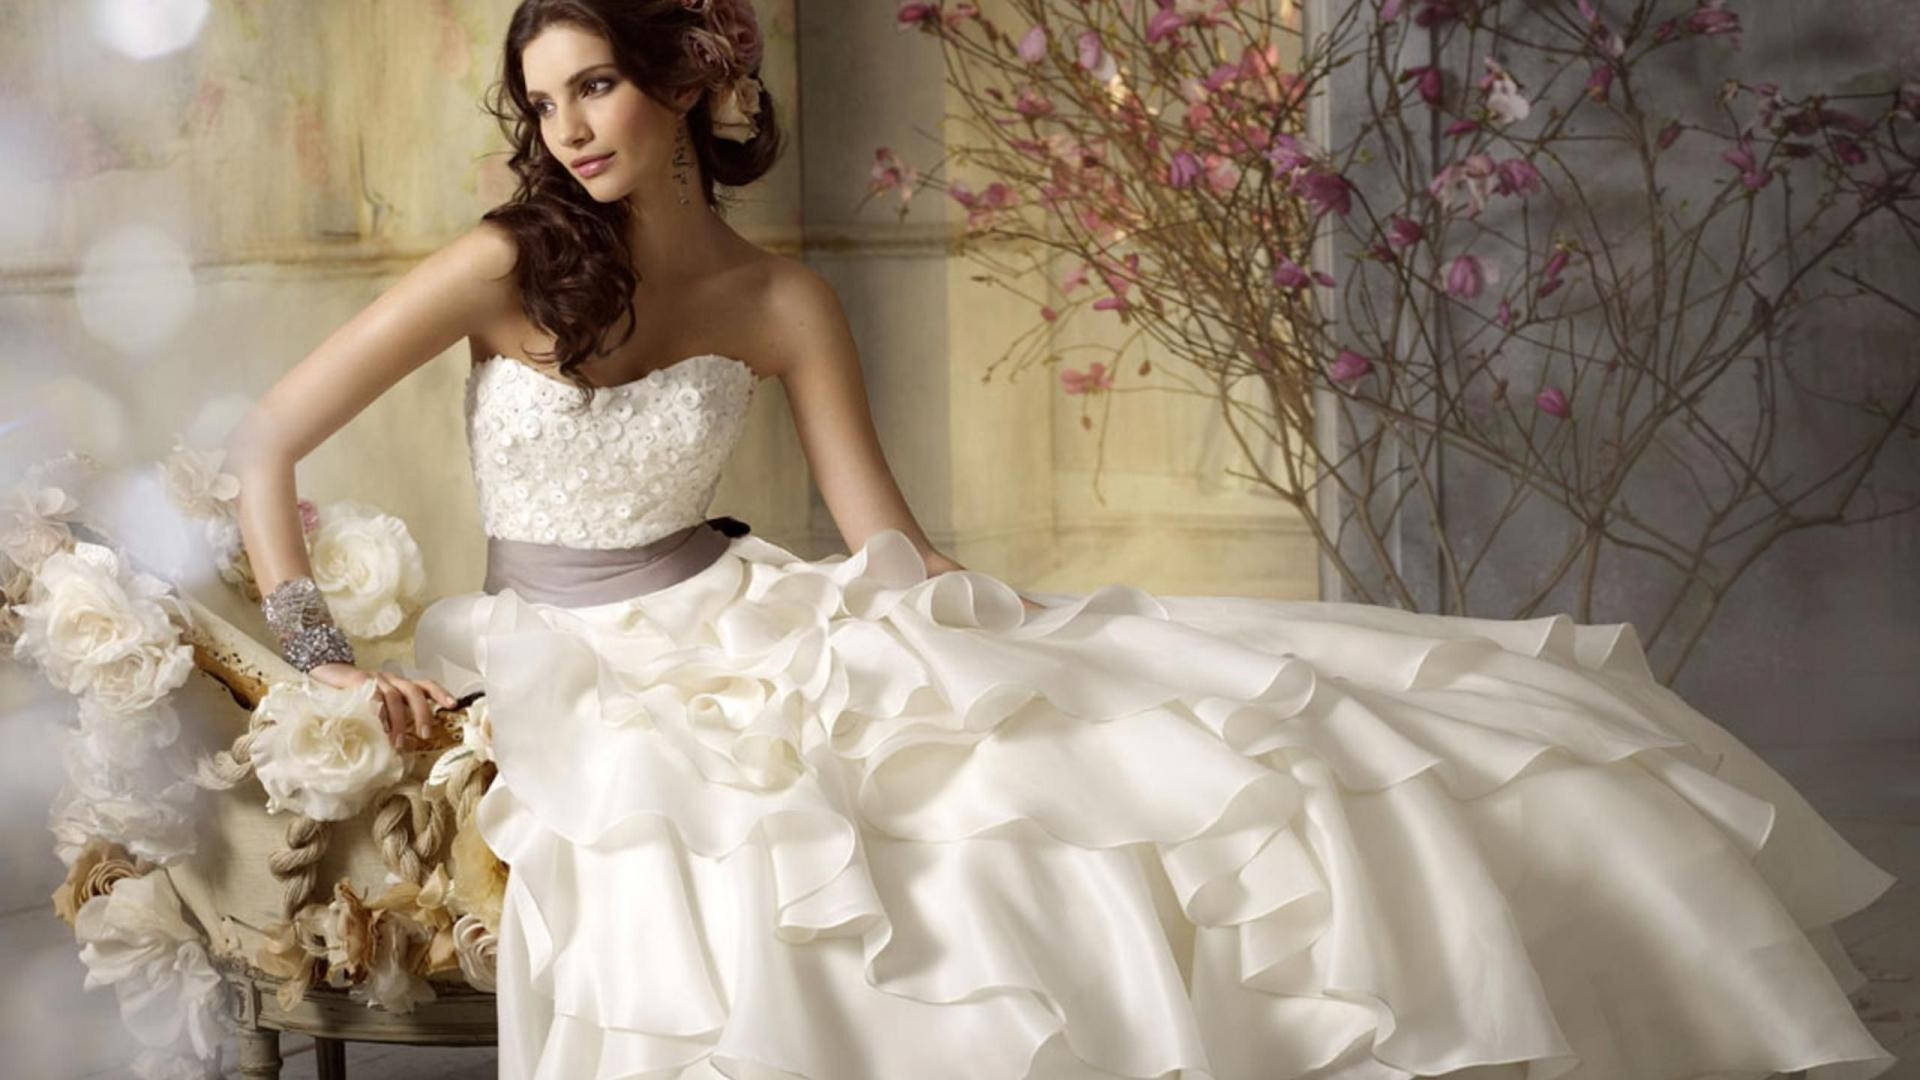 Ruffled Wedding Dress Background